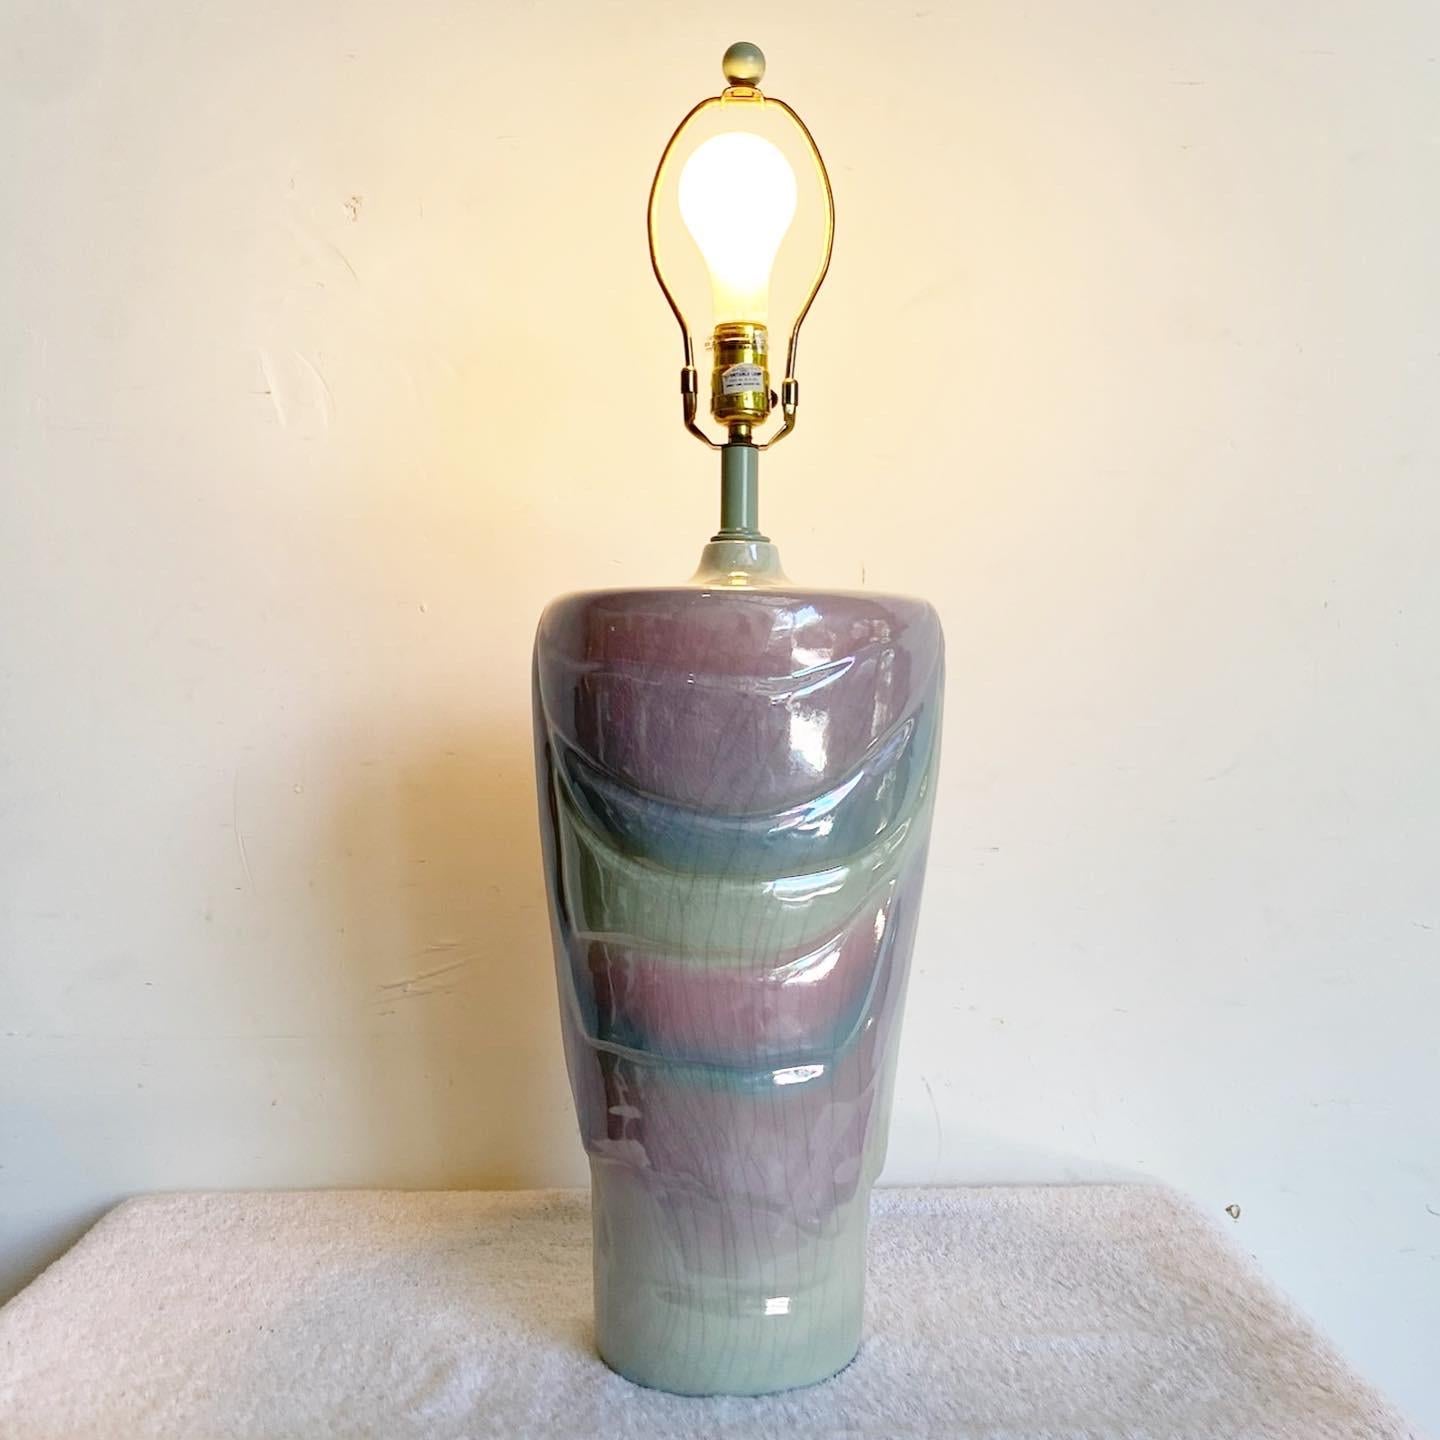 Peppen Sie Ihren Raum mit der wunderschönen postmodernen Vintage-Keramik-Tischlampe auf. Diese bezaubernde Lampe ist in Pastellblau, Lila und Rosa gehalten und verleiht jedem Raum einen lebendigen und faszinierenden Touch.

Wunderschöne postmoderne